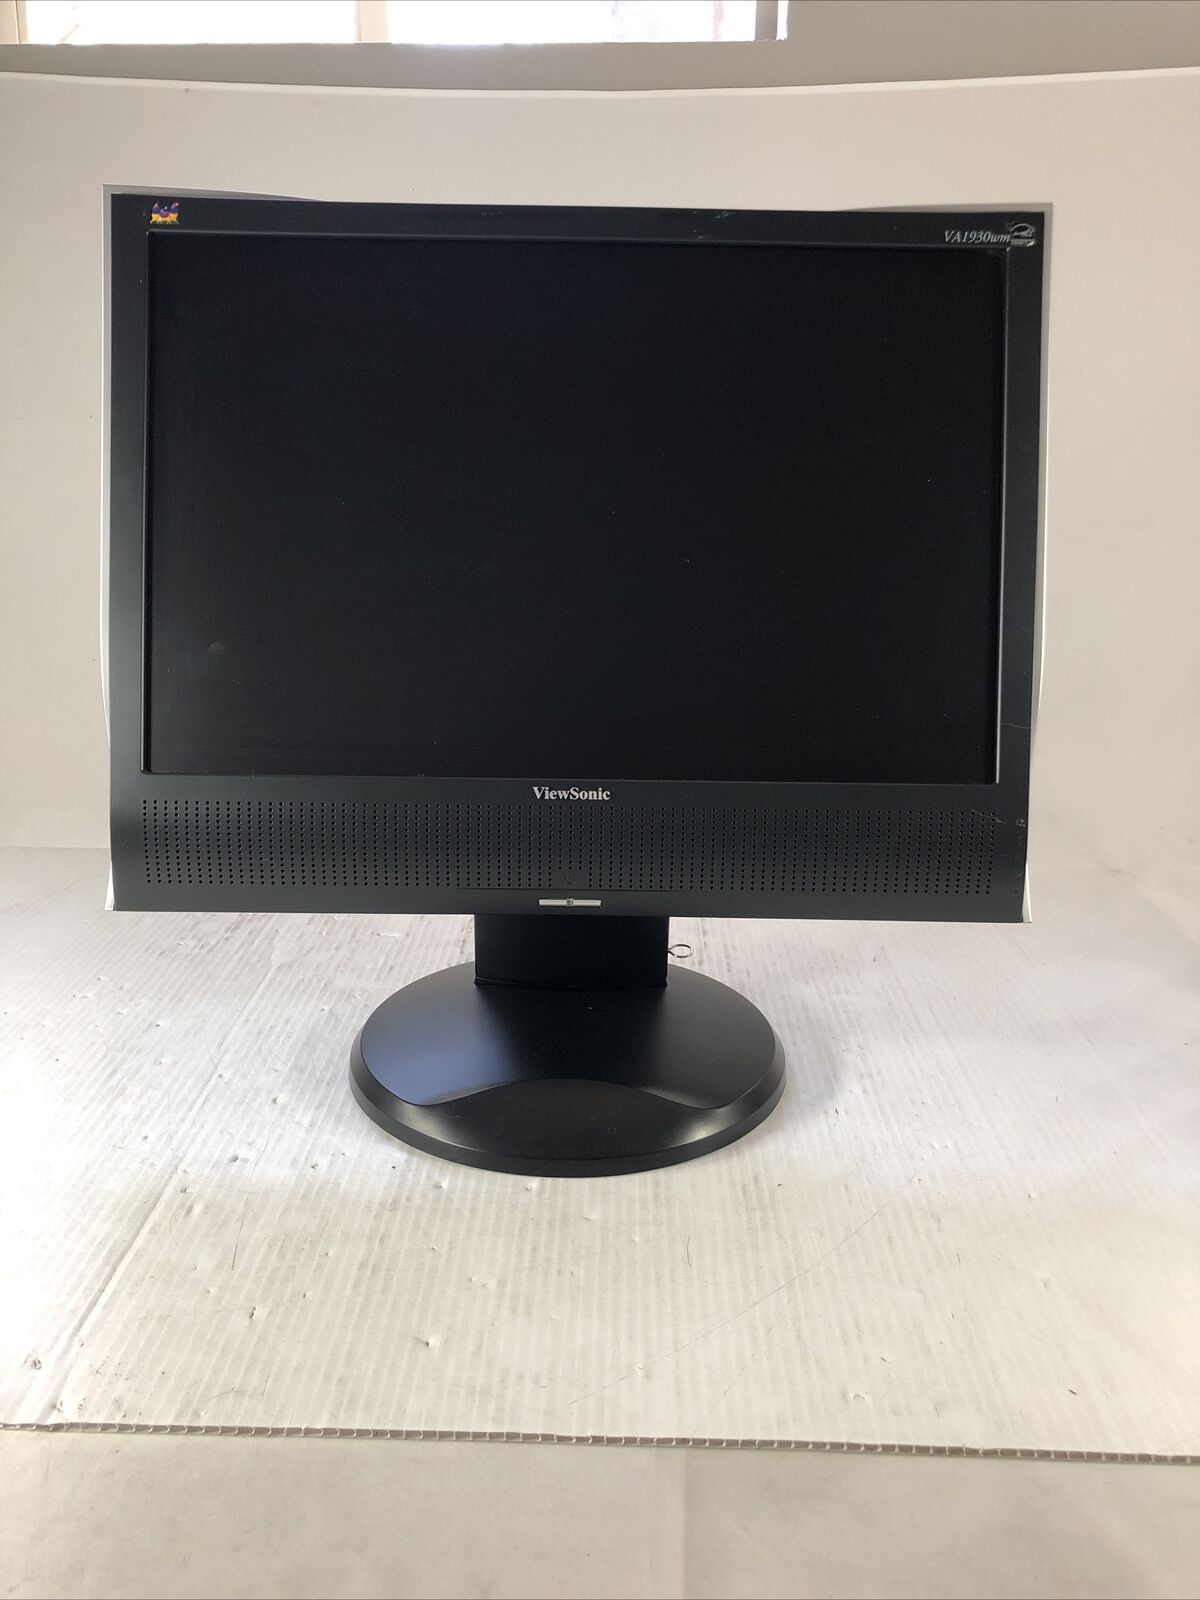 Viewsonic VA1930wm TV/LCD Monitor CAPACITOR Repair Kit w/ Solder Iron